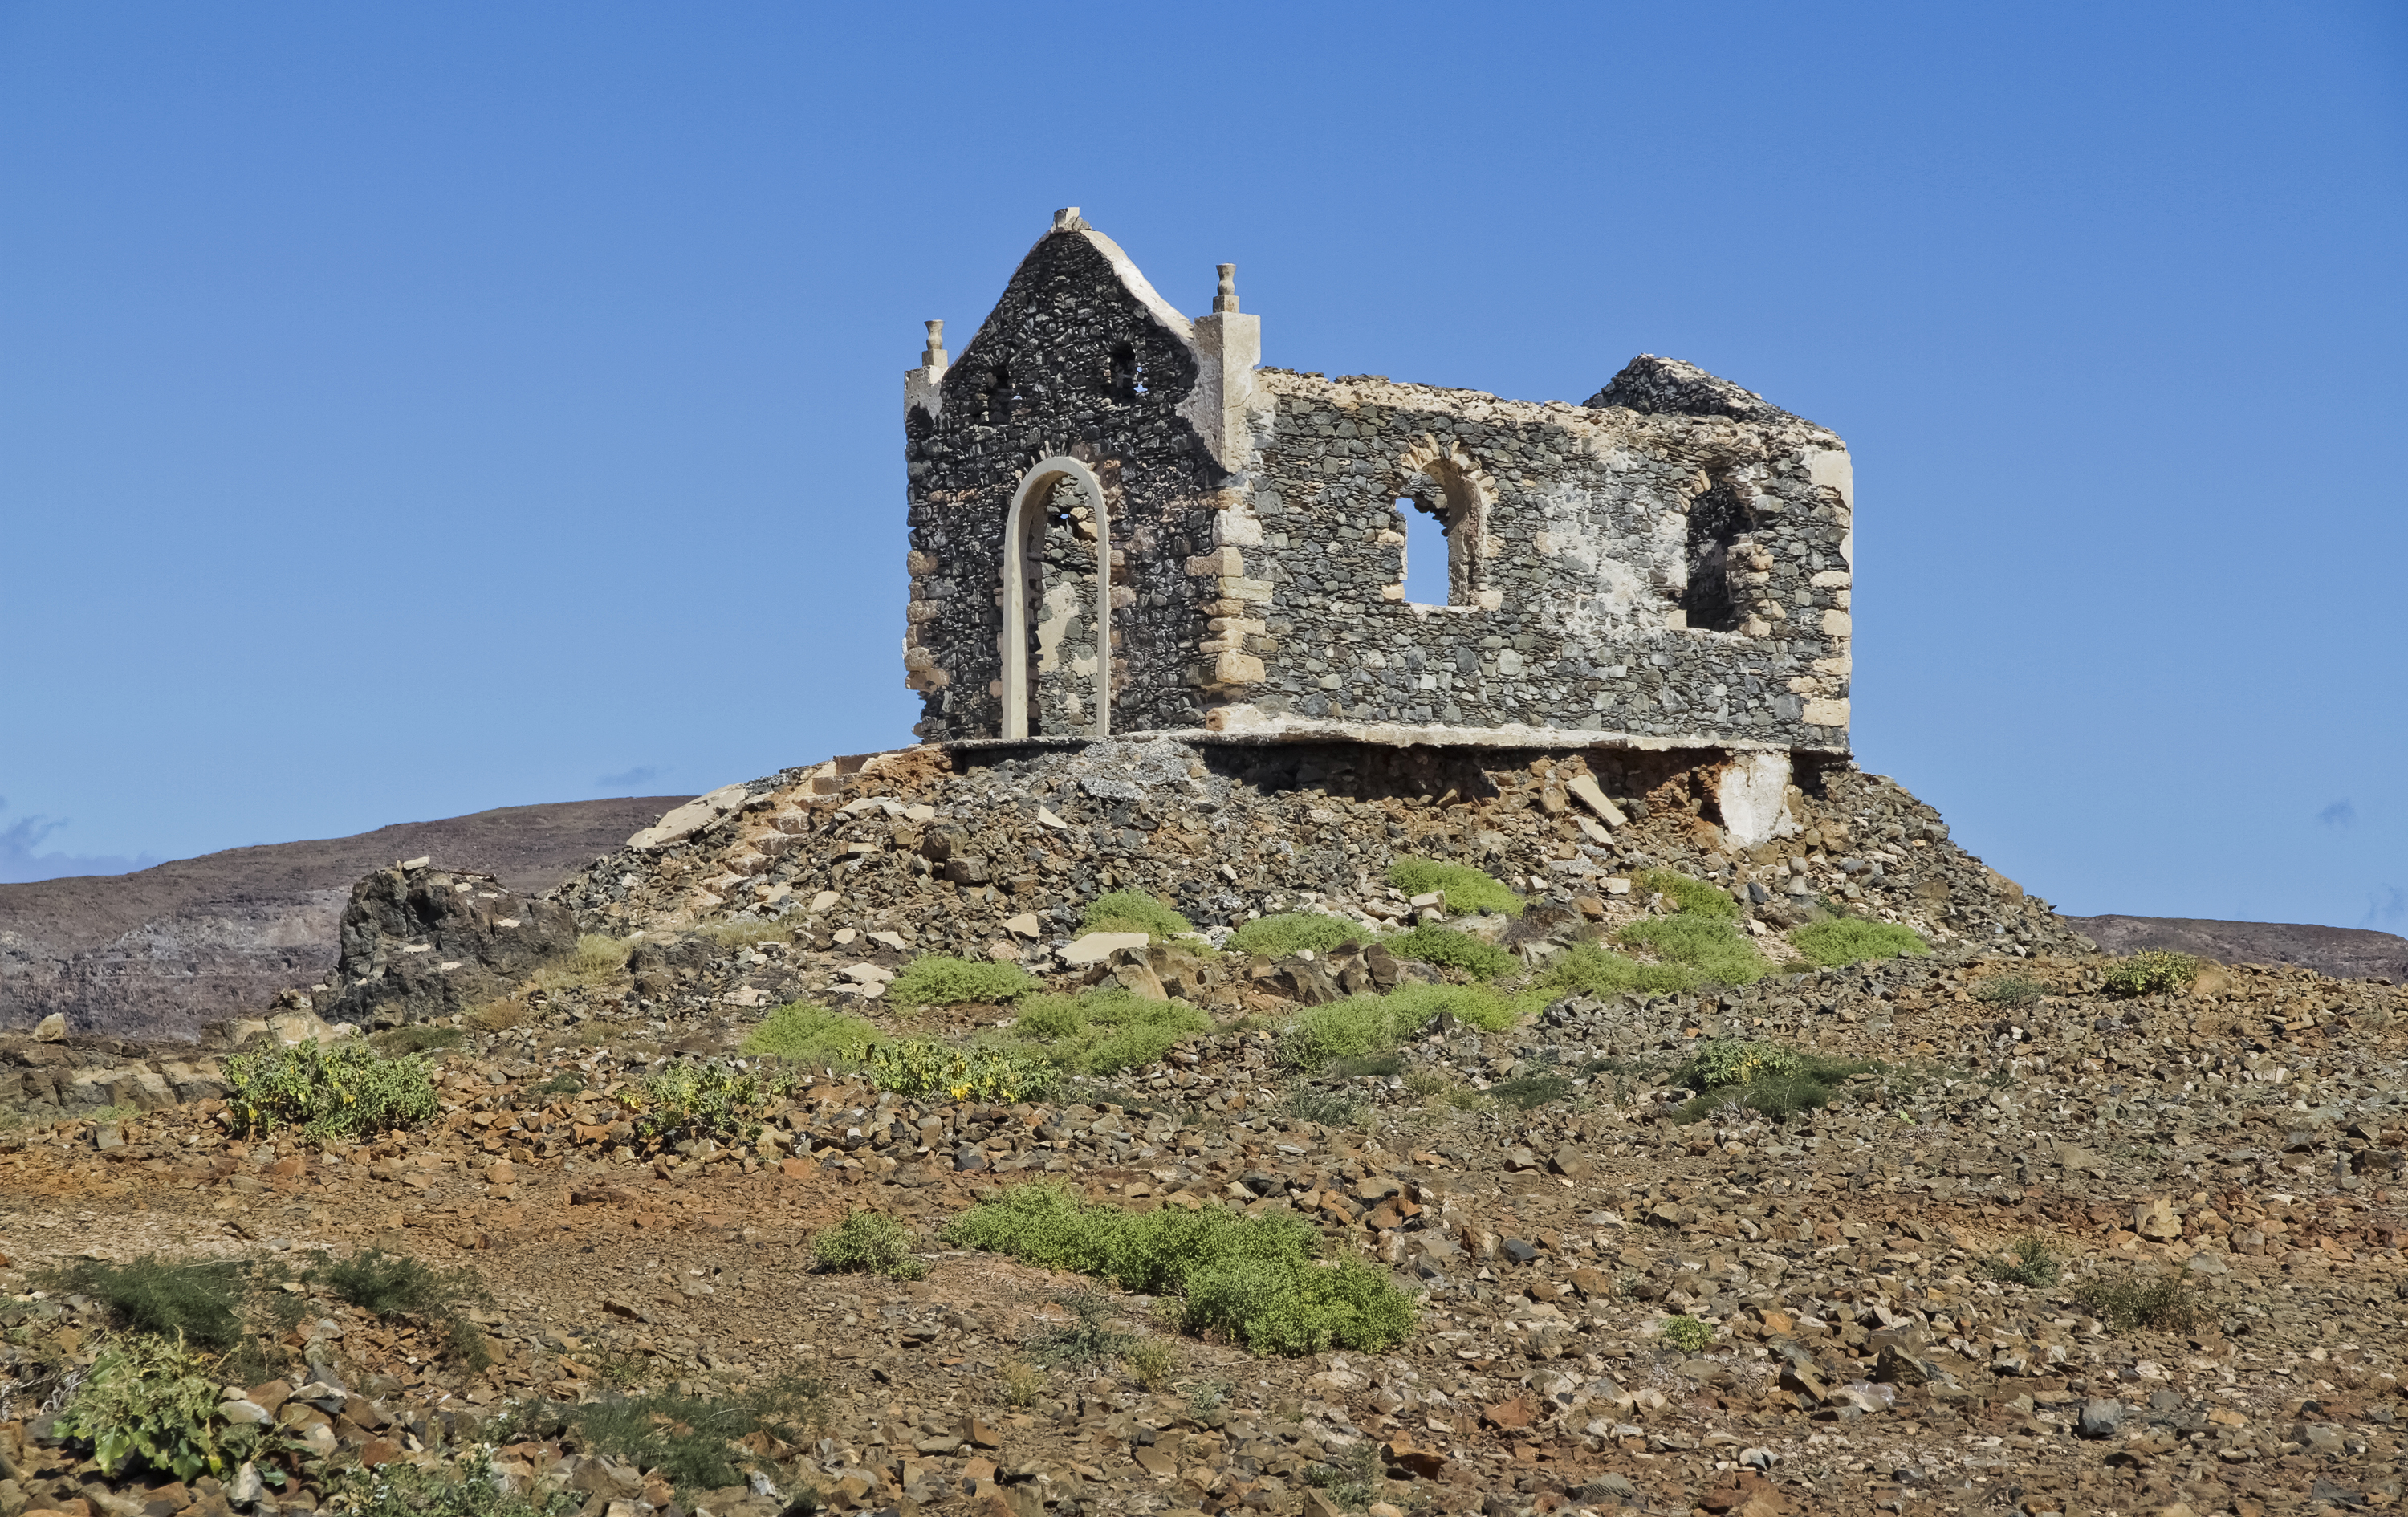 Capela de Nossa Senhora de Fátima, Boa Vista, Cape Verde, 2010 December